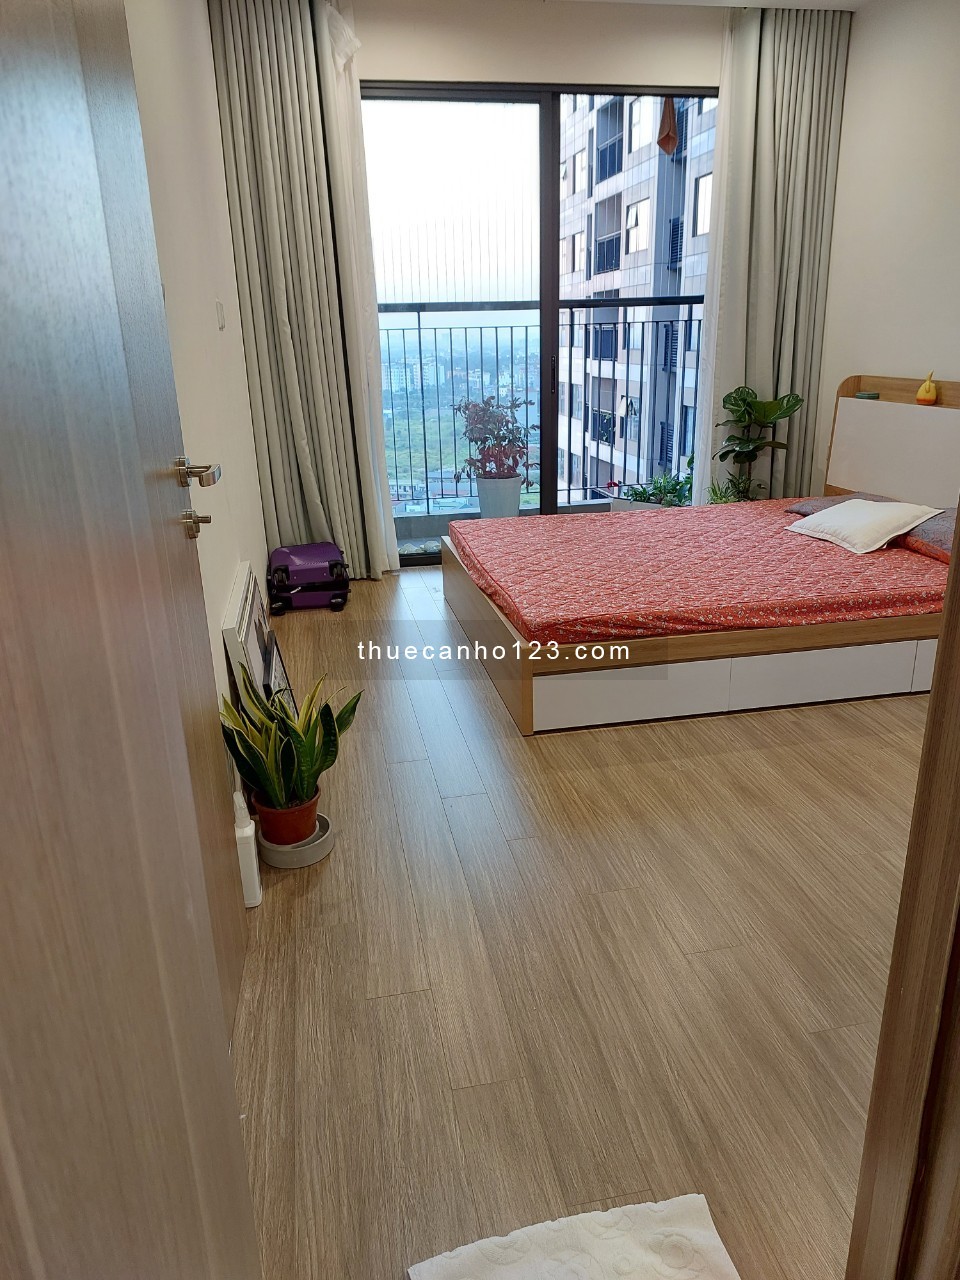 Cho thuê chung cư 2 phòng ngủ 2 vệ sinh Vinhomes Ocean park Gia LâmApartment for rent